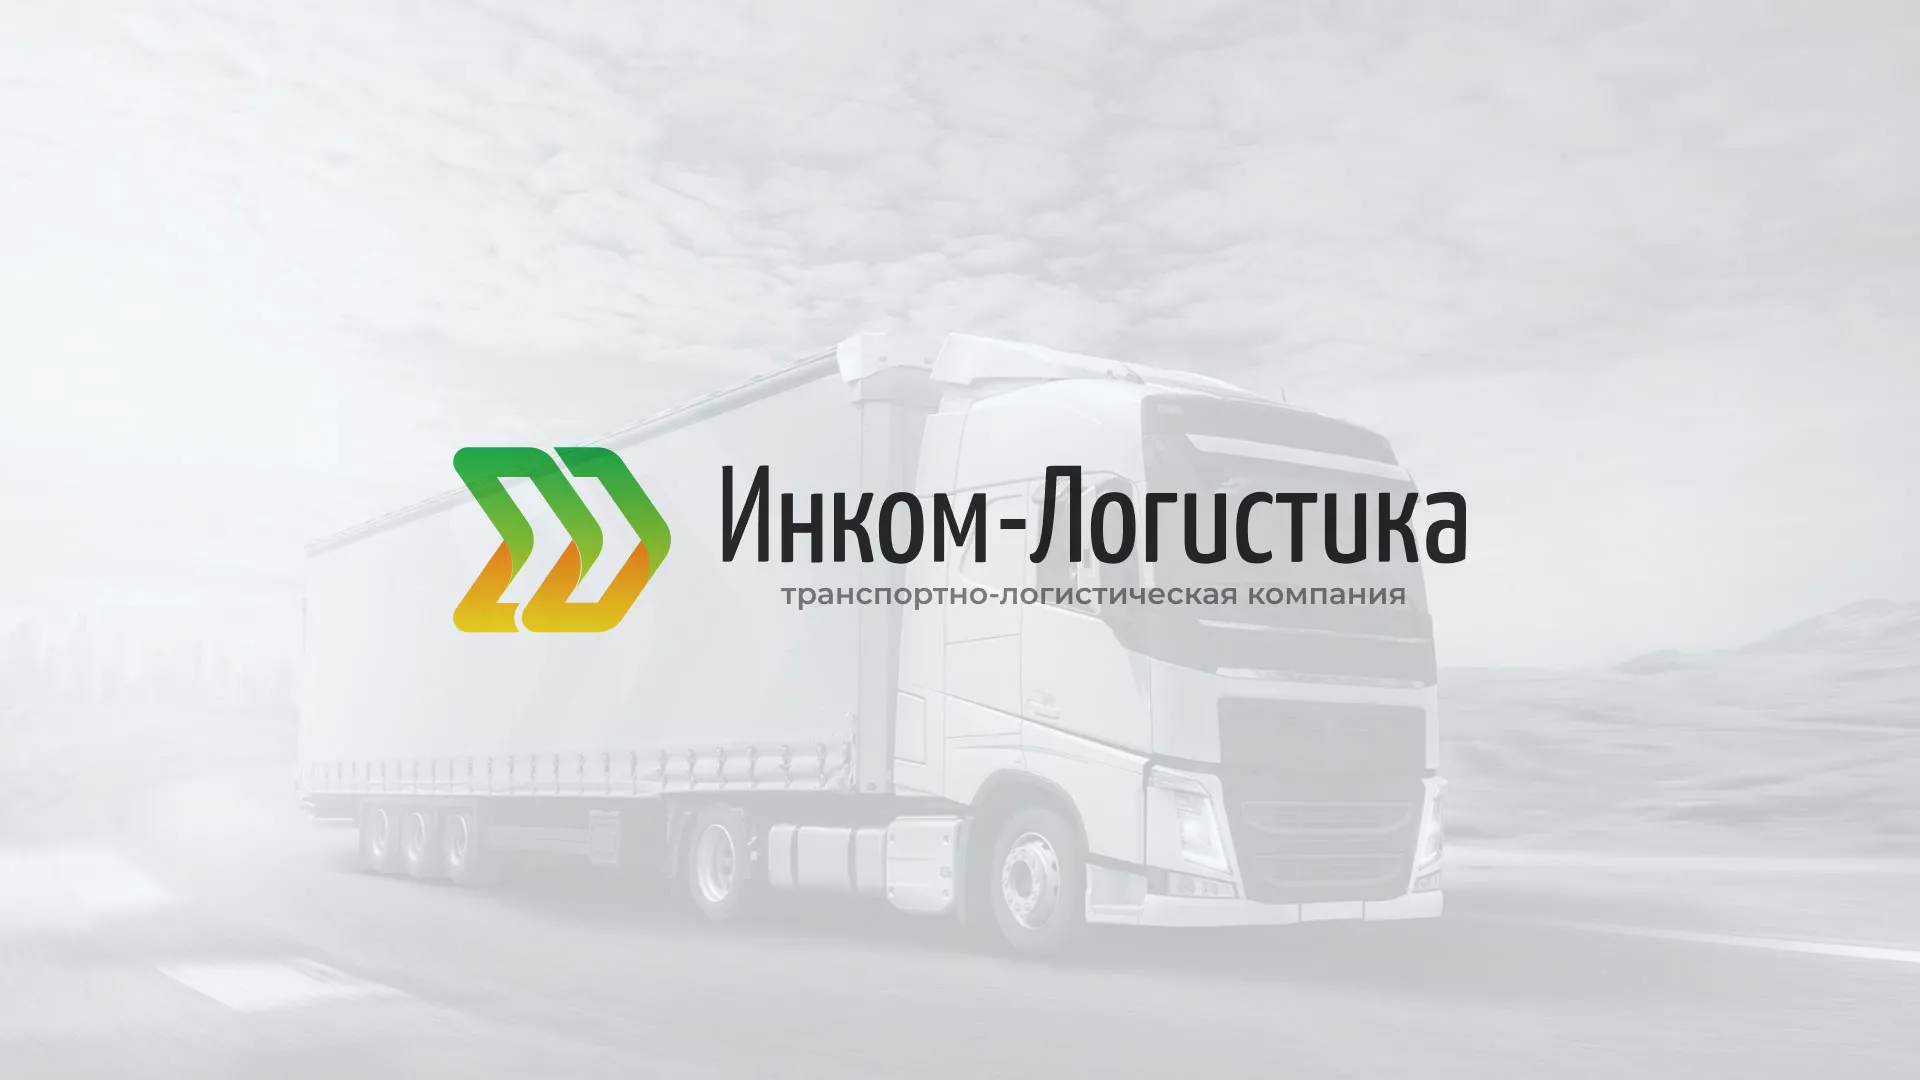 Разработка логотипа и сайта компании «Инком-Логистика» в Устюжне